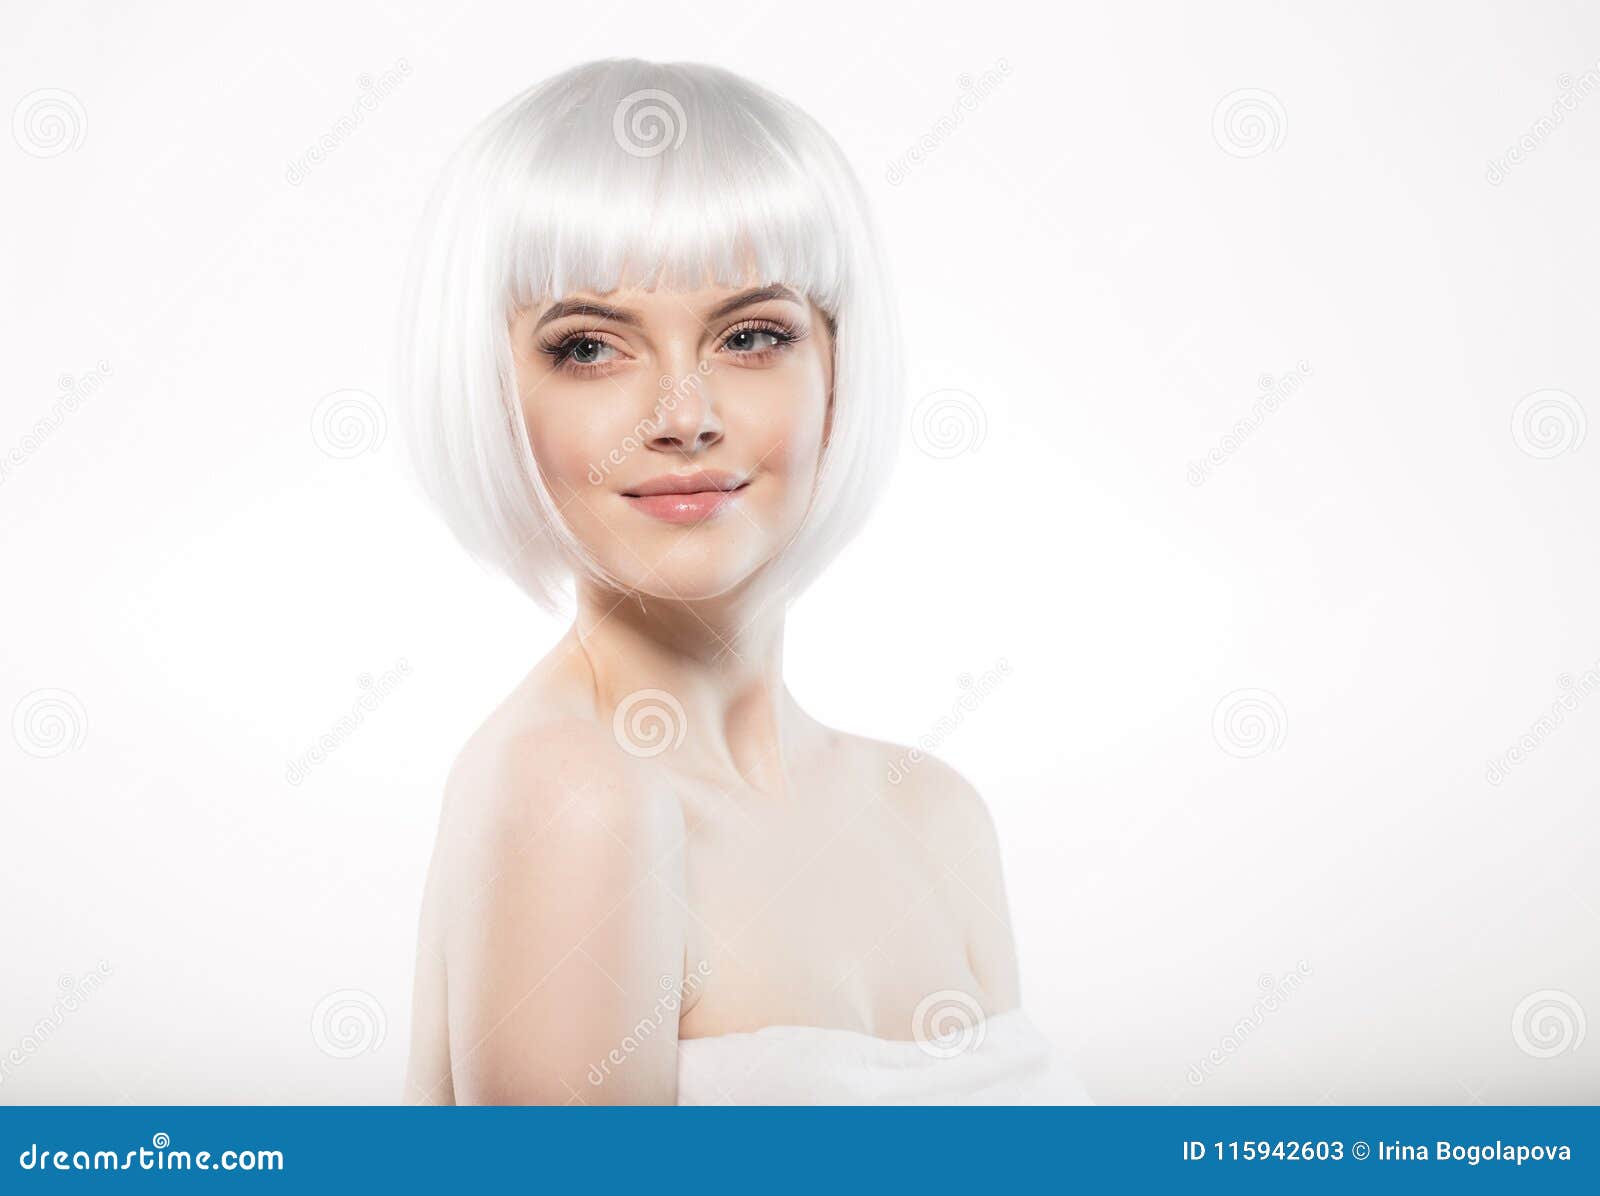 5. Blonde Pornstars with Platinum Hair - wide 3